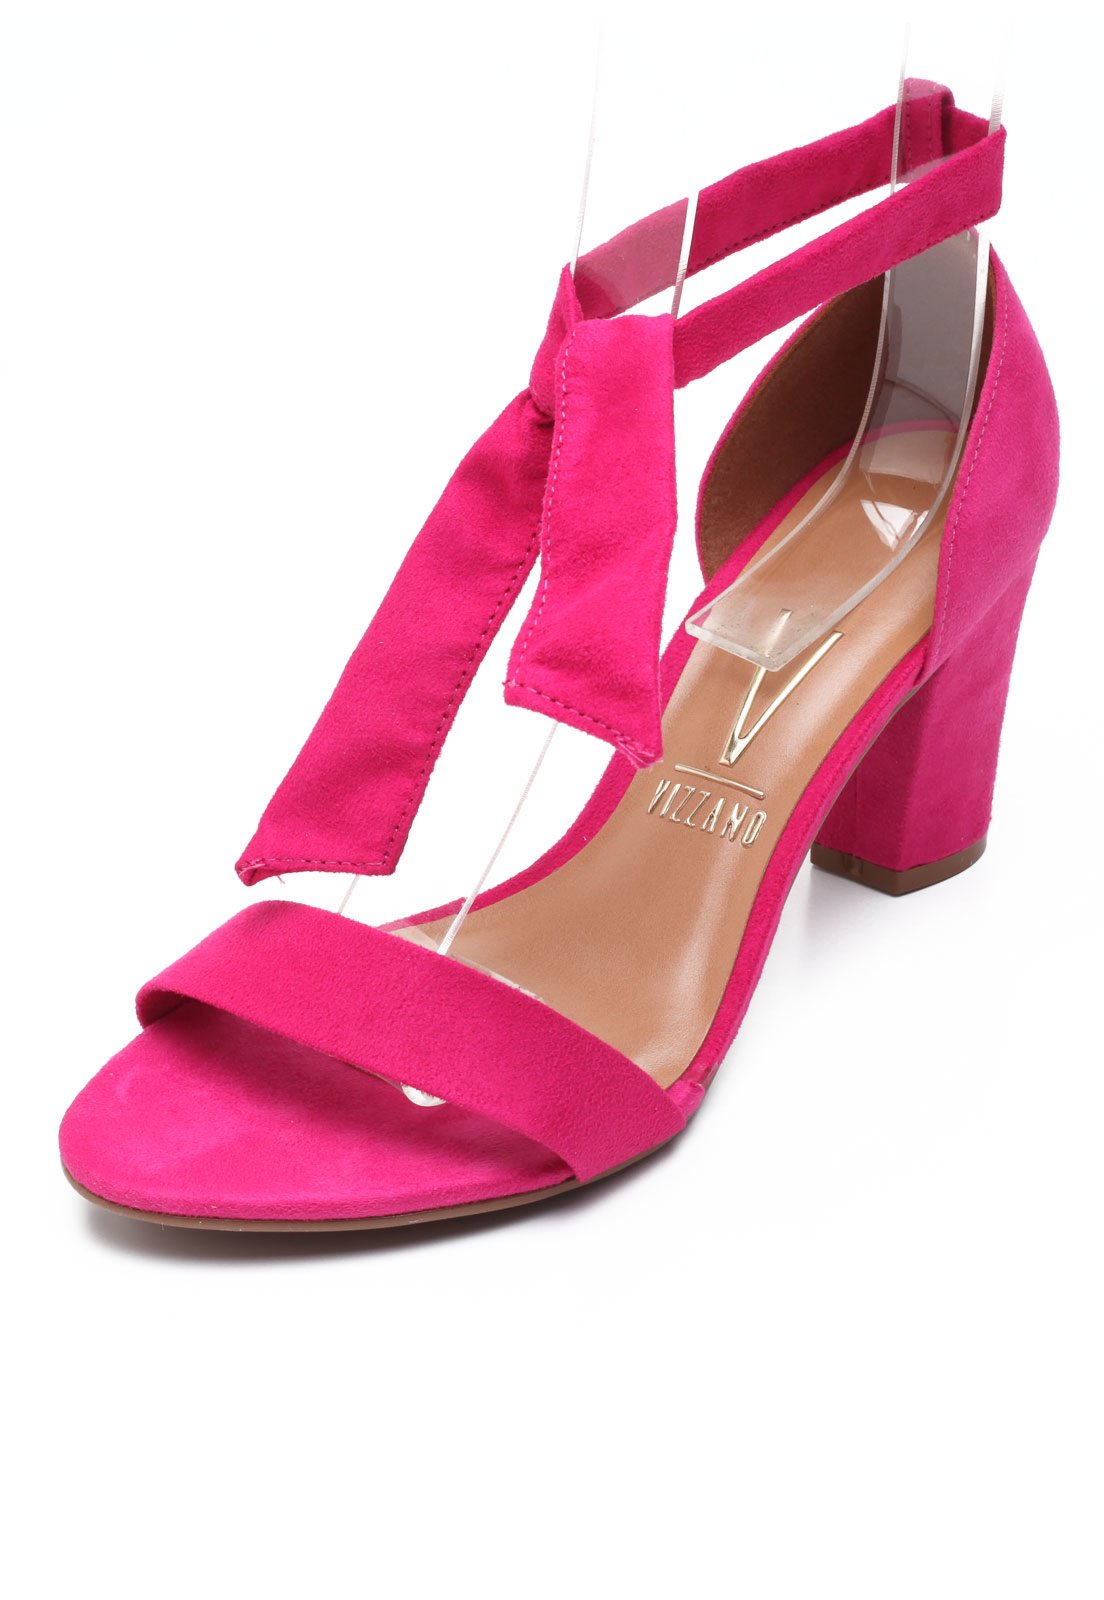 sandália rosa vizzano